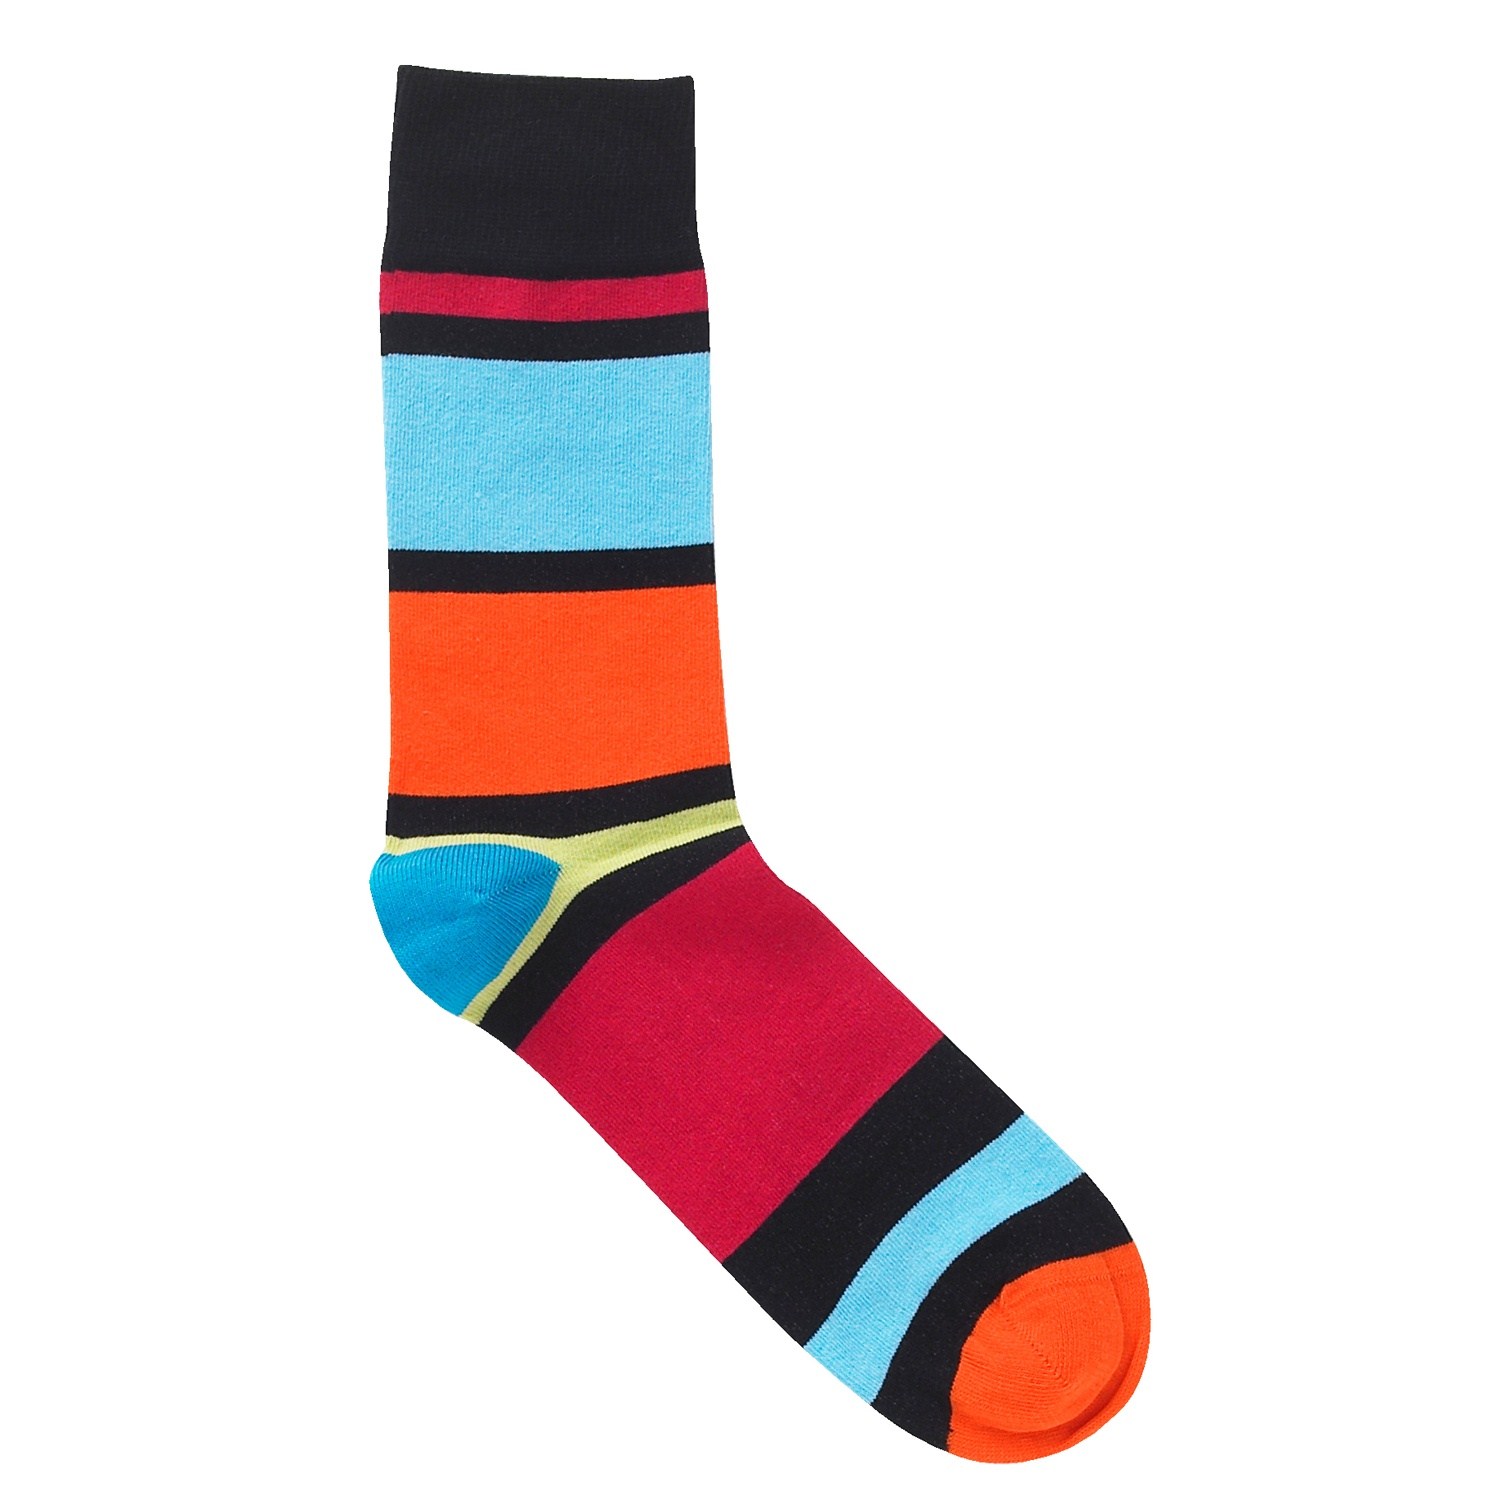 JBS Socks 200 81 85 - Everyday socks - Socks - Socks - Timarco.co.uk